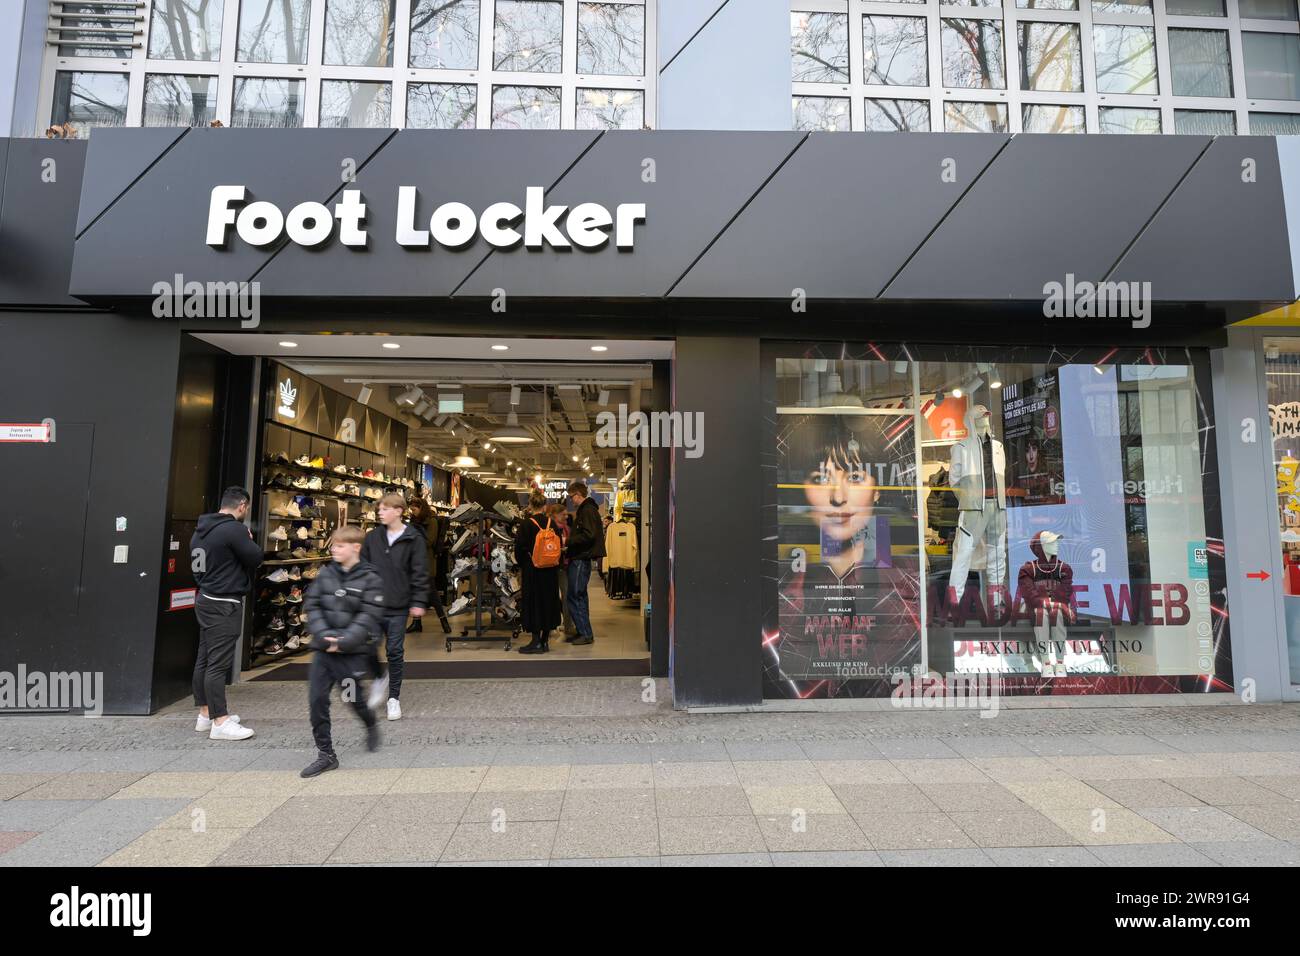 Foot Locker Schuhe, Geschäft, Tauentzienstraße, Charlottenburg, Berlin, Deutschland *** Foot Locker Shoes, Store, Tauentzienstraße, Charlottenburg, Berlin, Germany Stock Photo